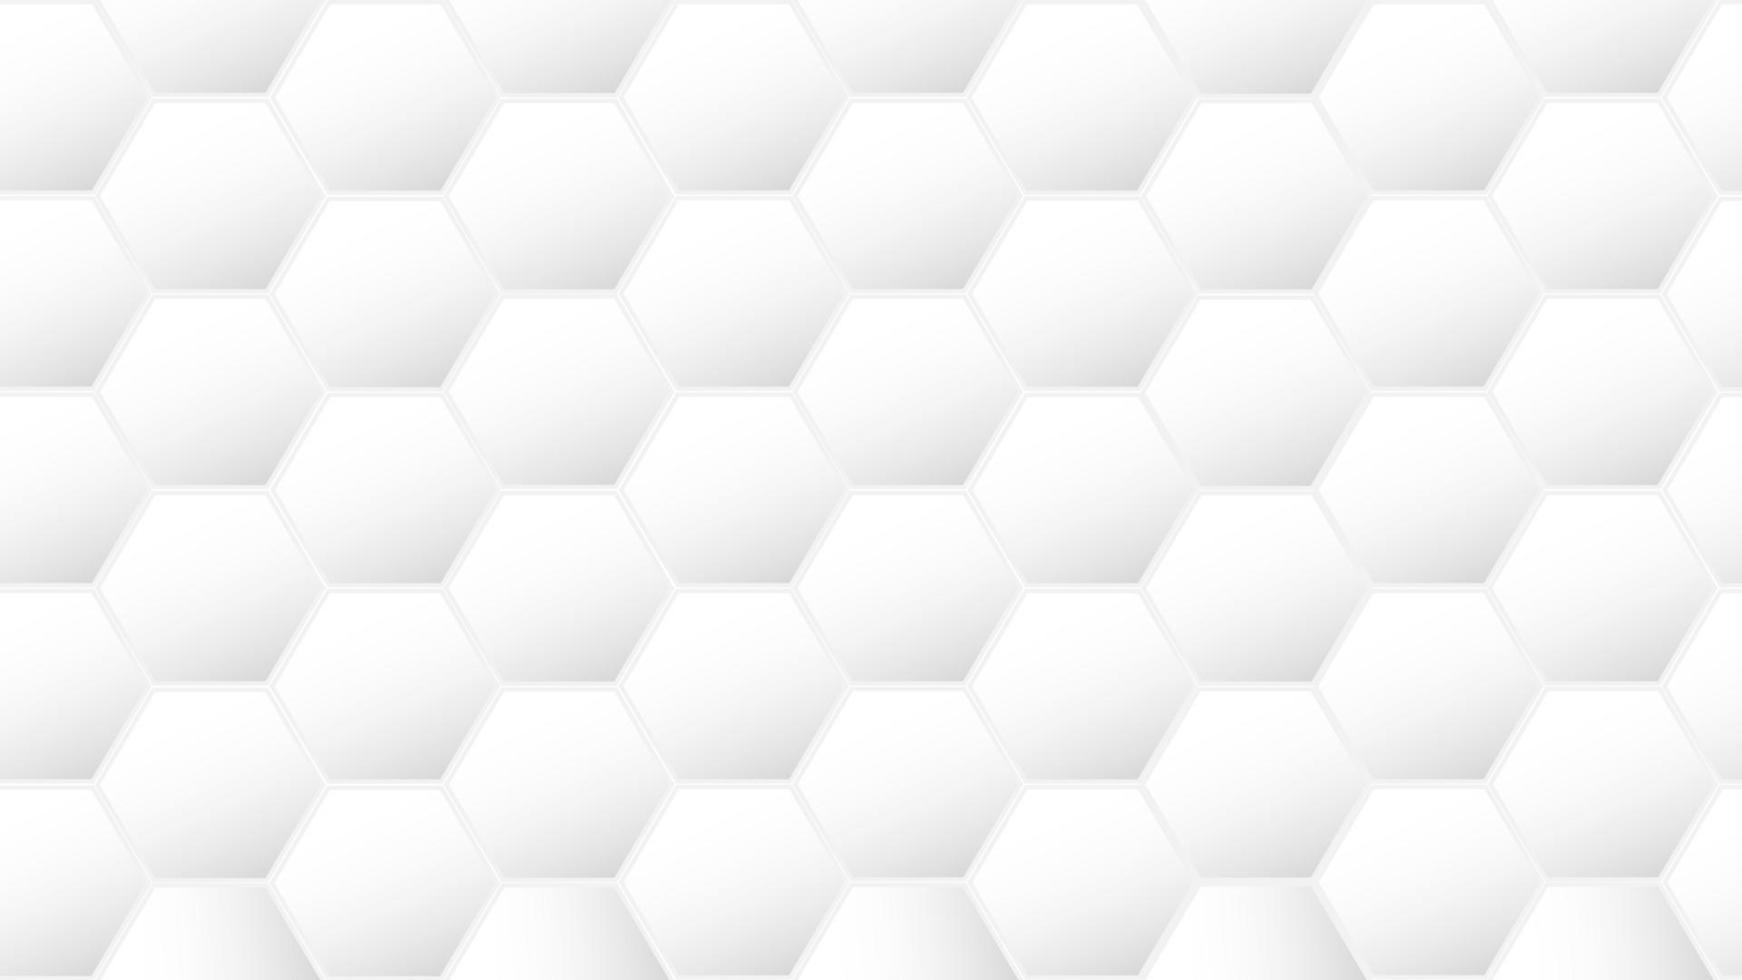 Hexagon abstrakter Hintergrund. Vektor-Illustration. vektor